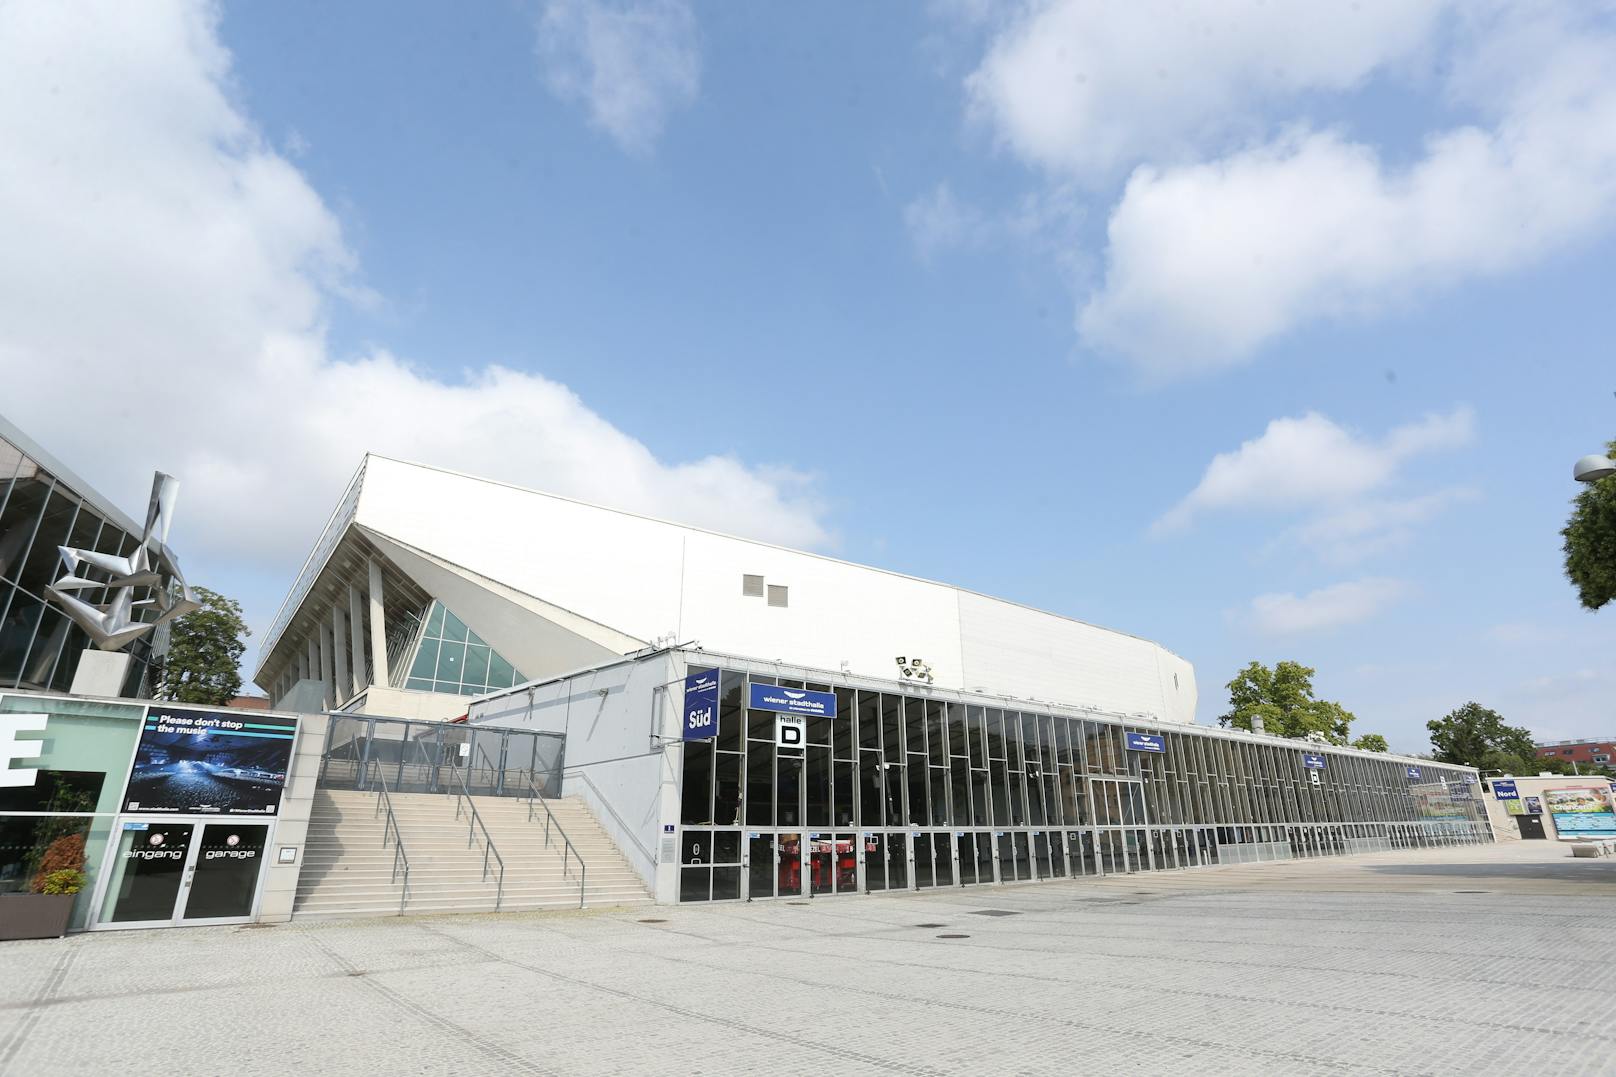 Wegen der Coronakrise steht die Wiener Stadthalle derzeit leer. Die ÖVP Wien schlägt nun die Nutzung als Markthalle vor.